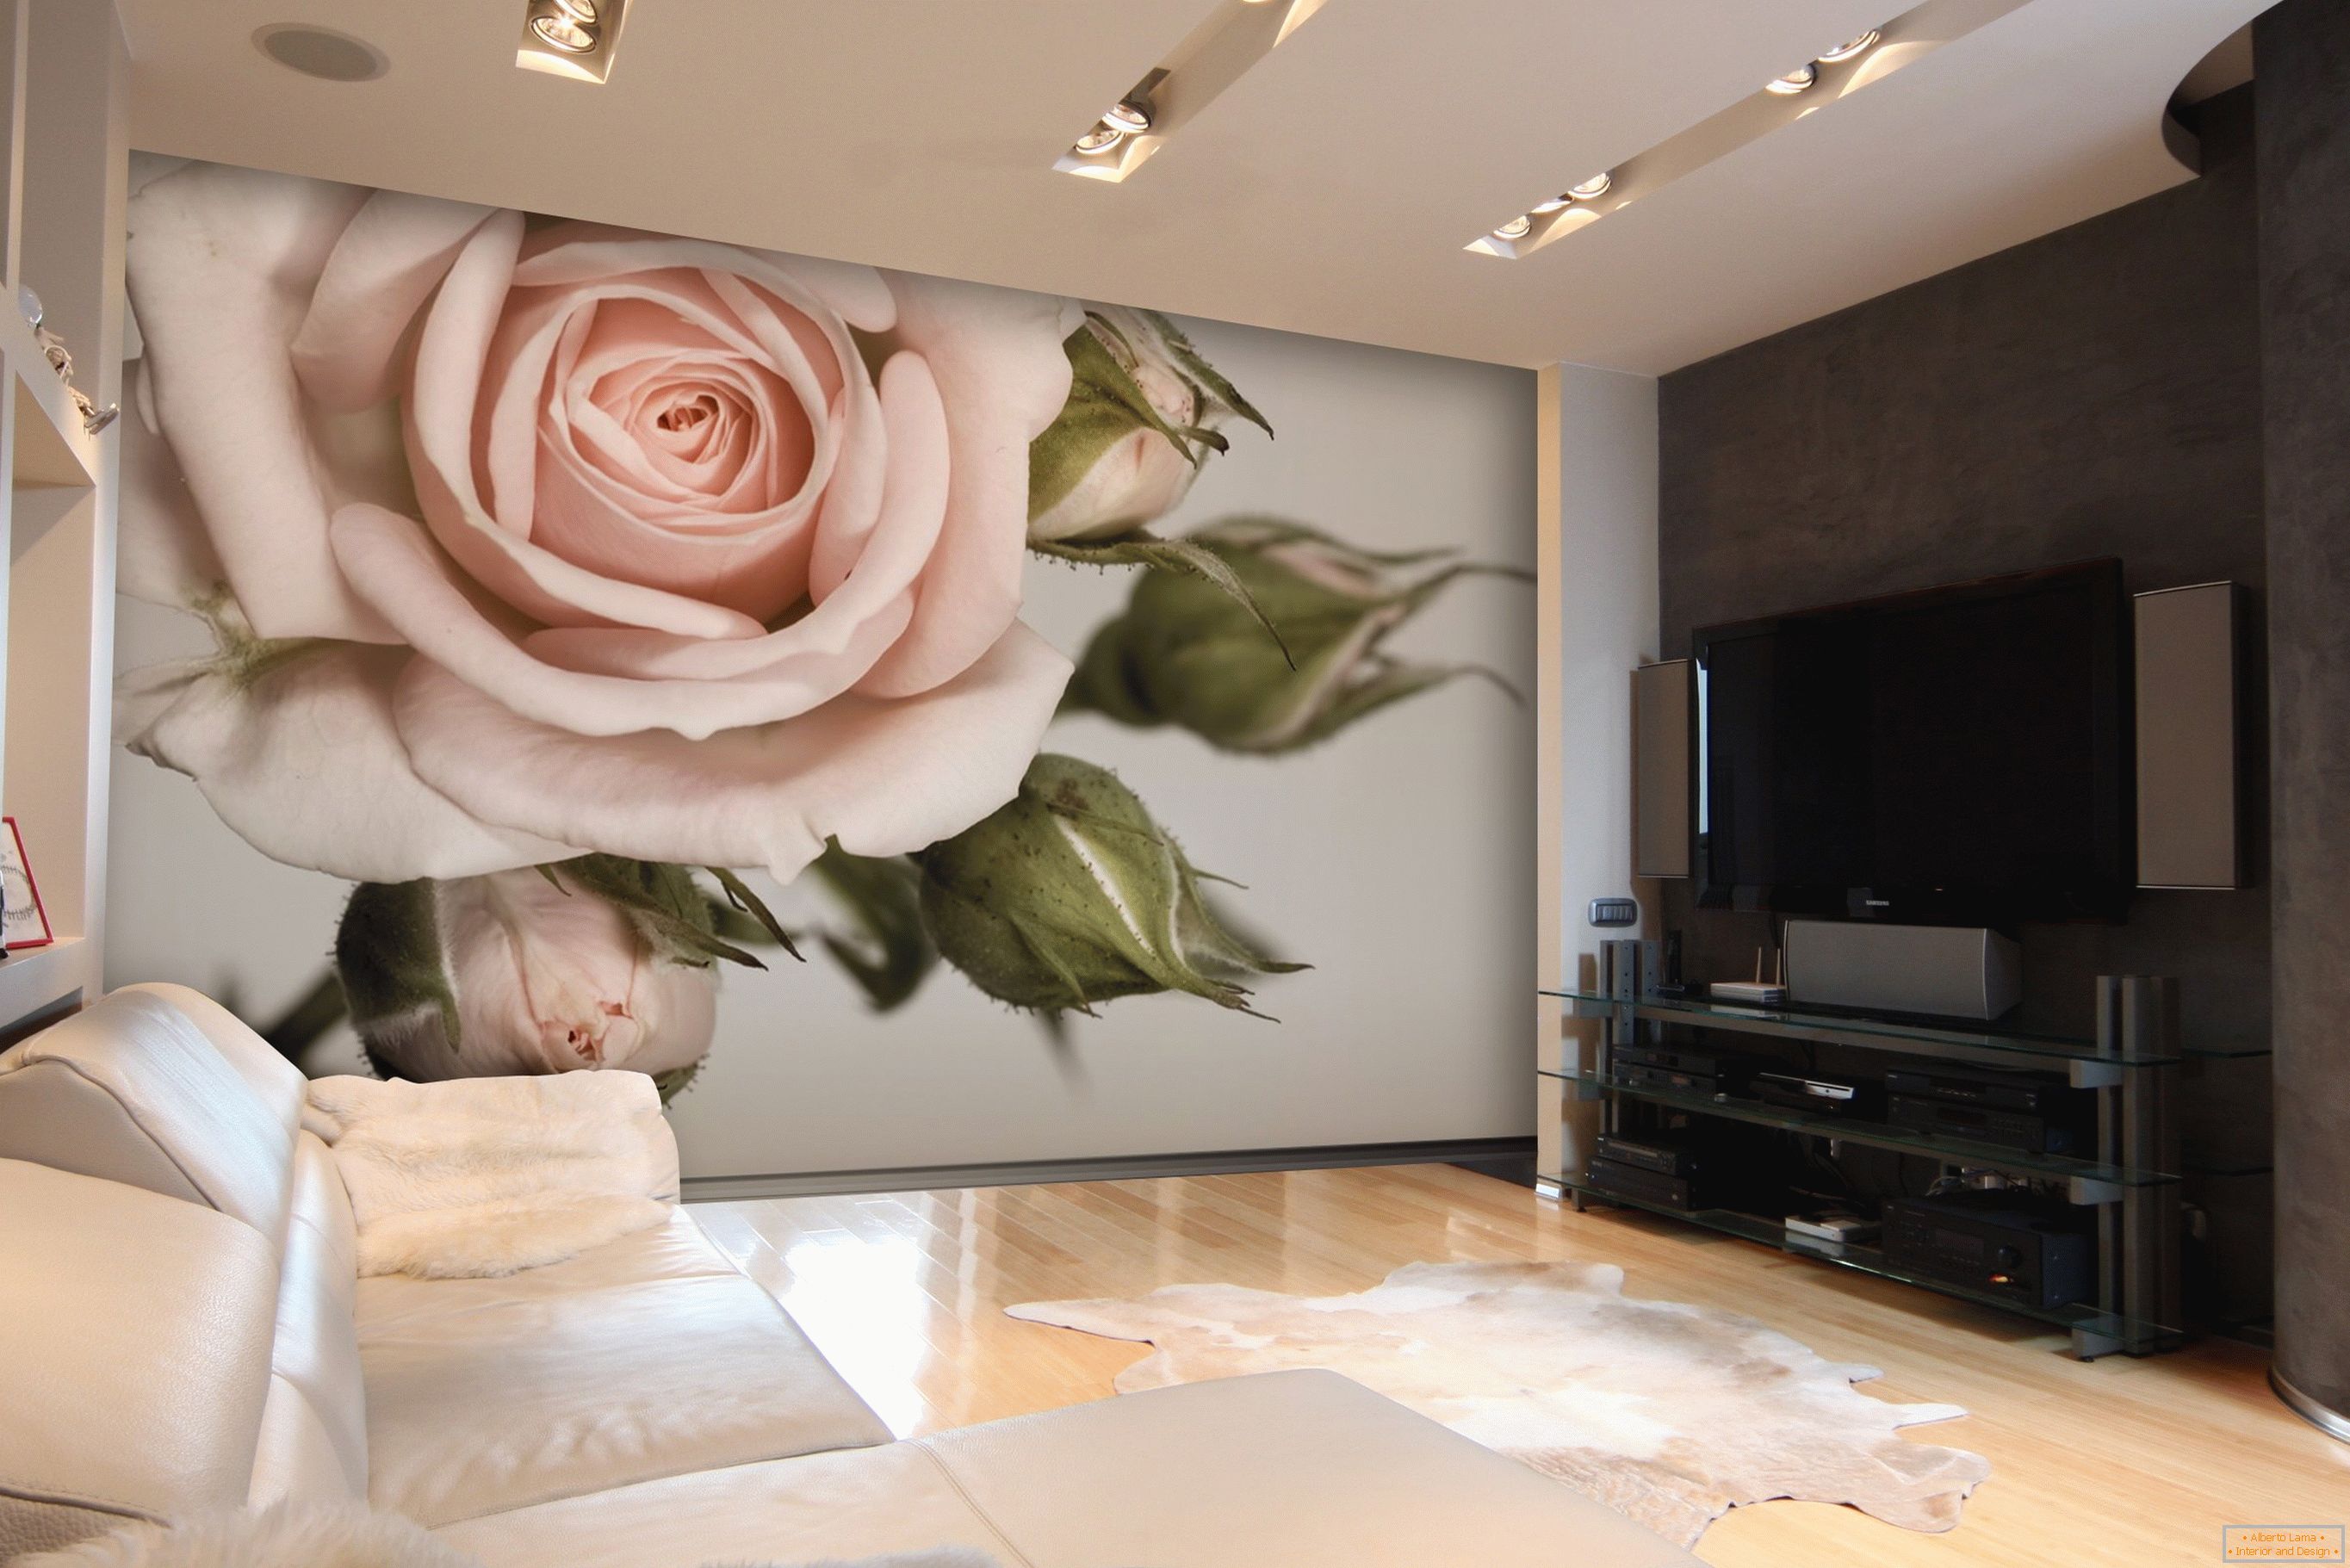 Imagini de fundal de fundal de trandafiri pentru sufragerie